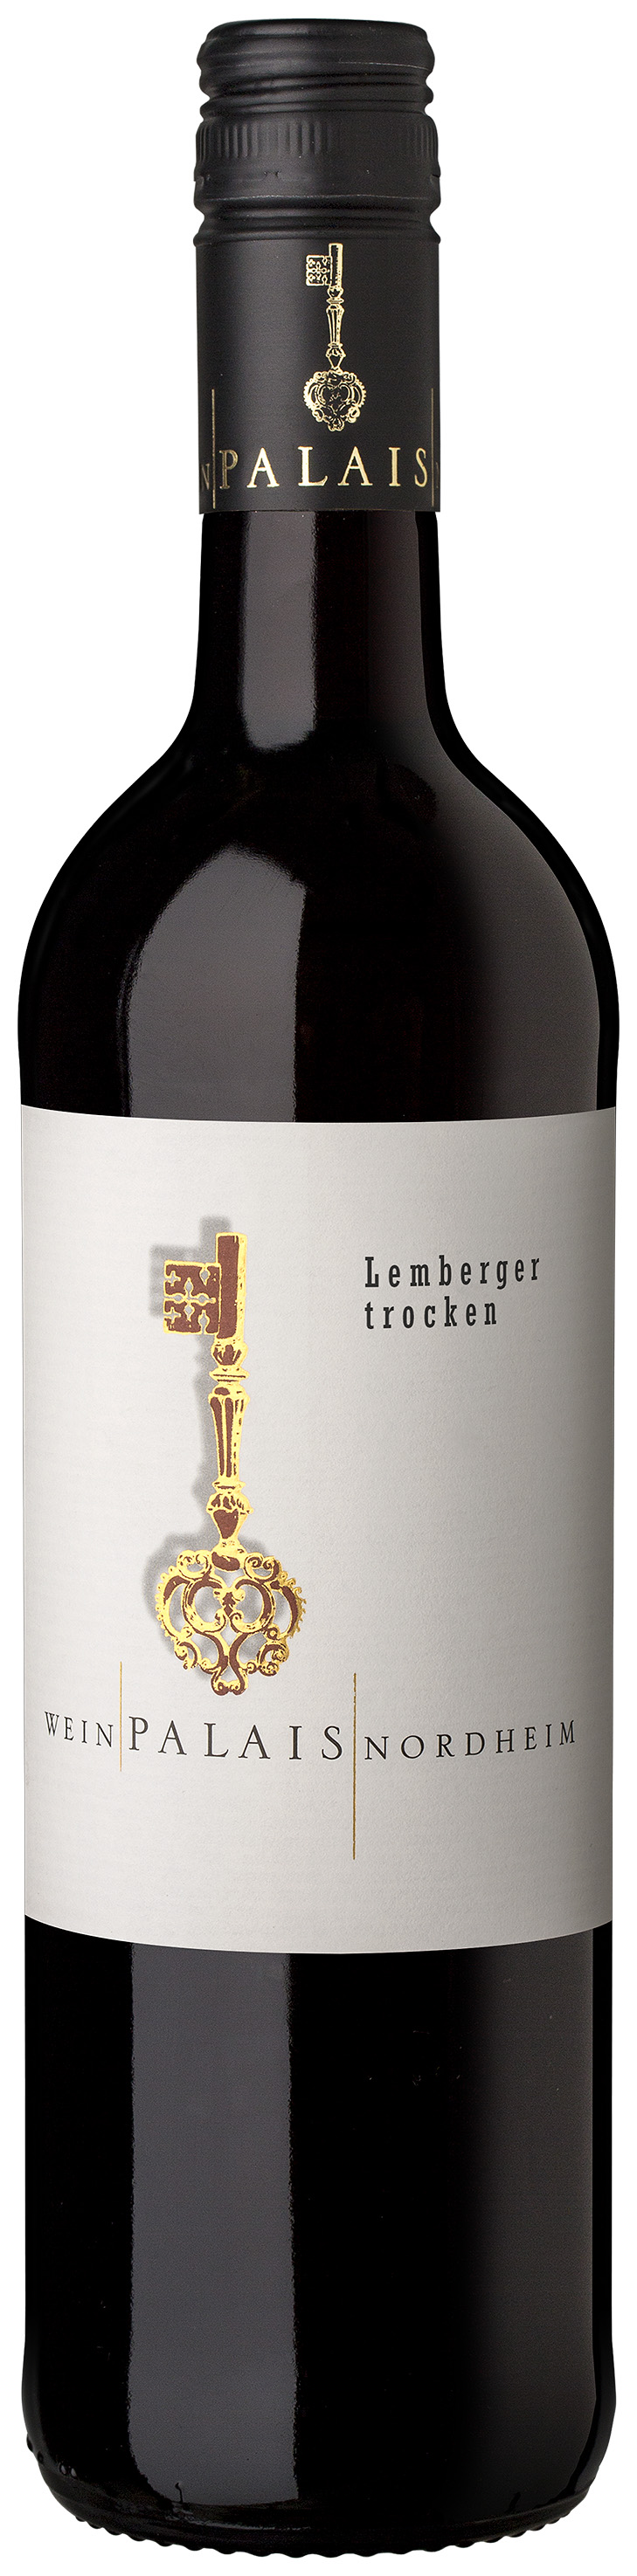 WeinPalais Nordheim 2019 Lemberger trocken